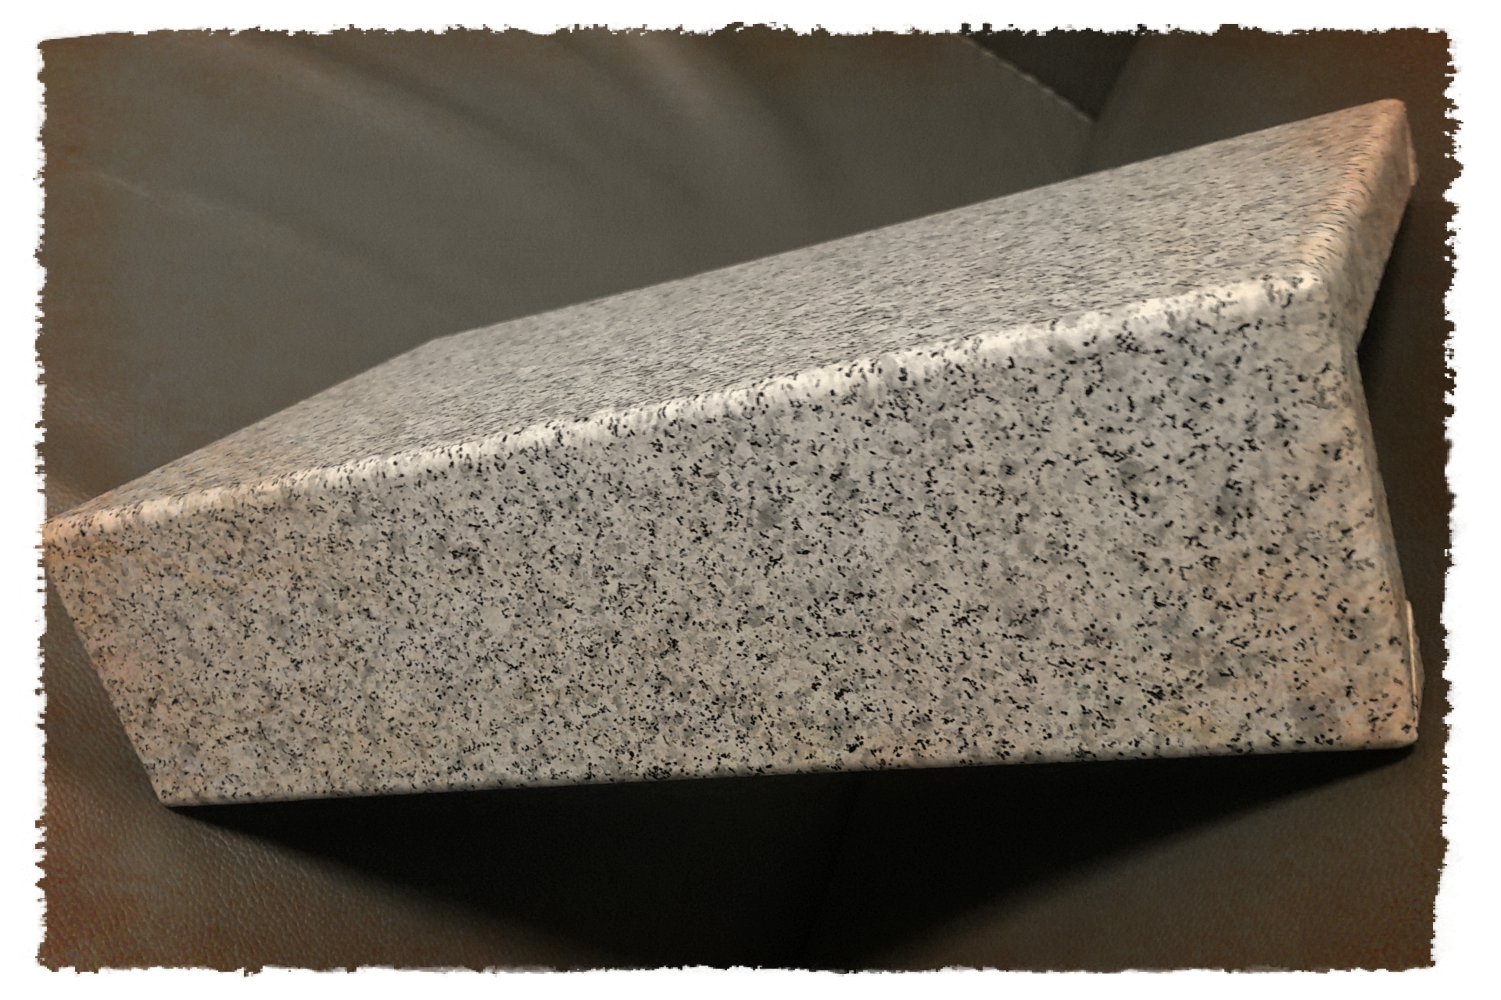 氟碳预辊涂仿石纹铝单板